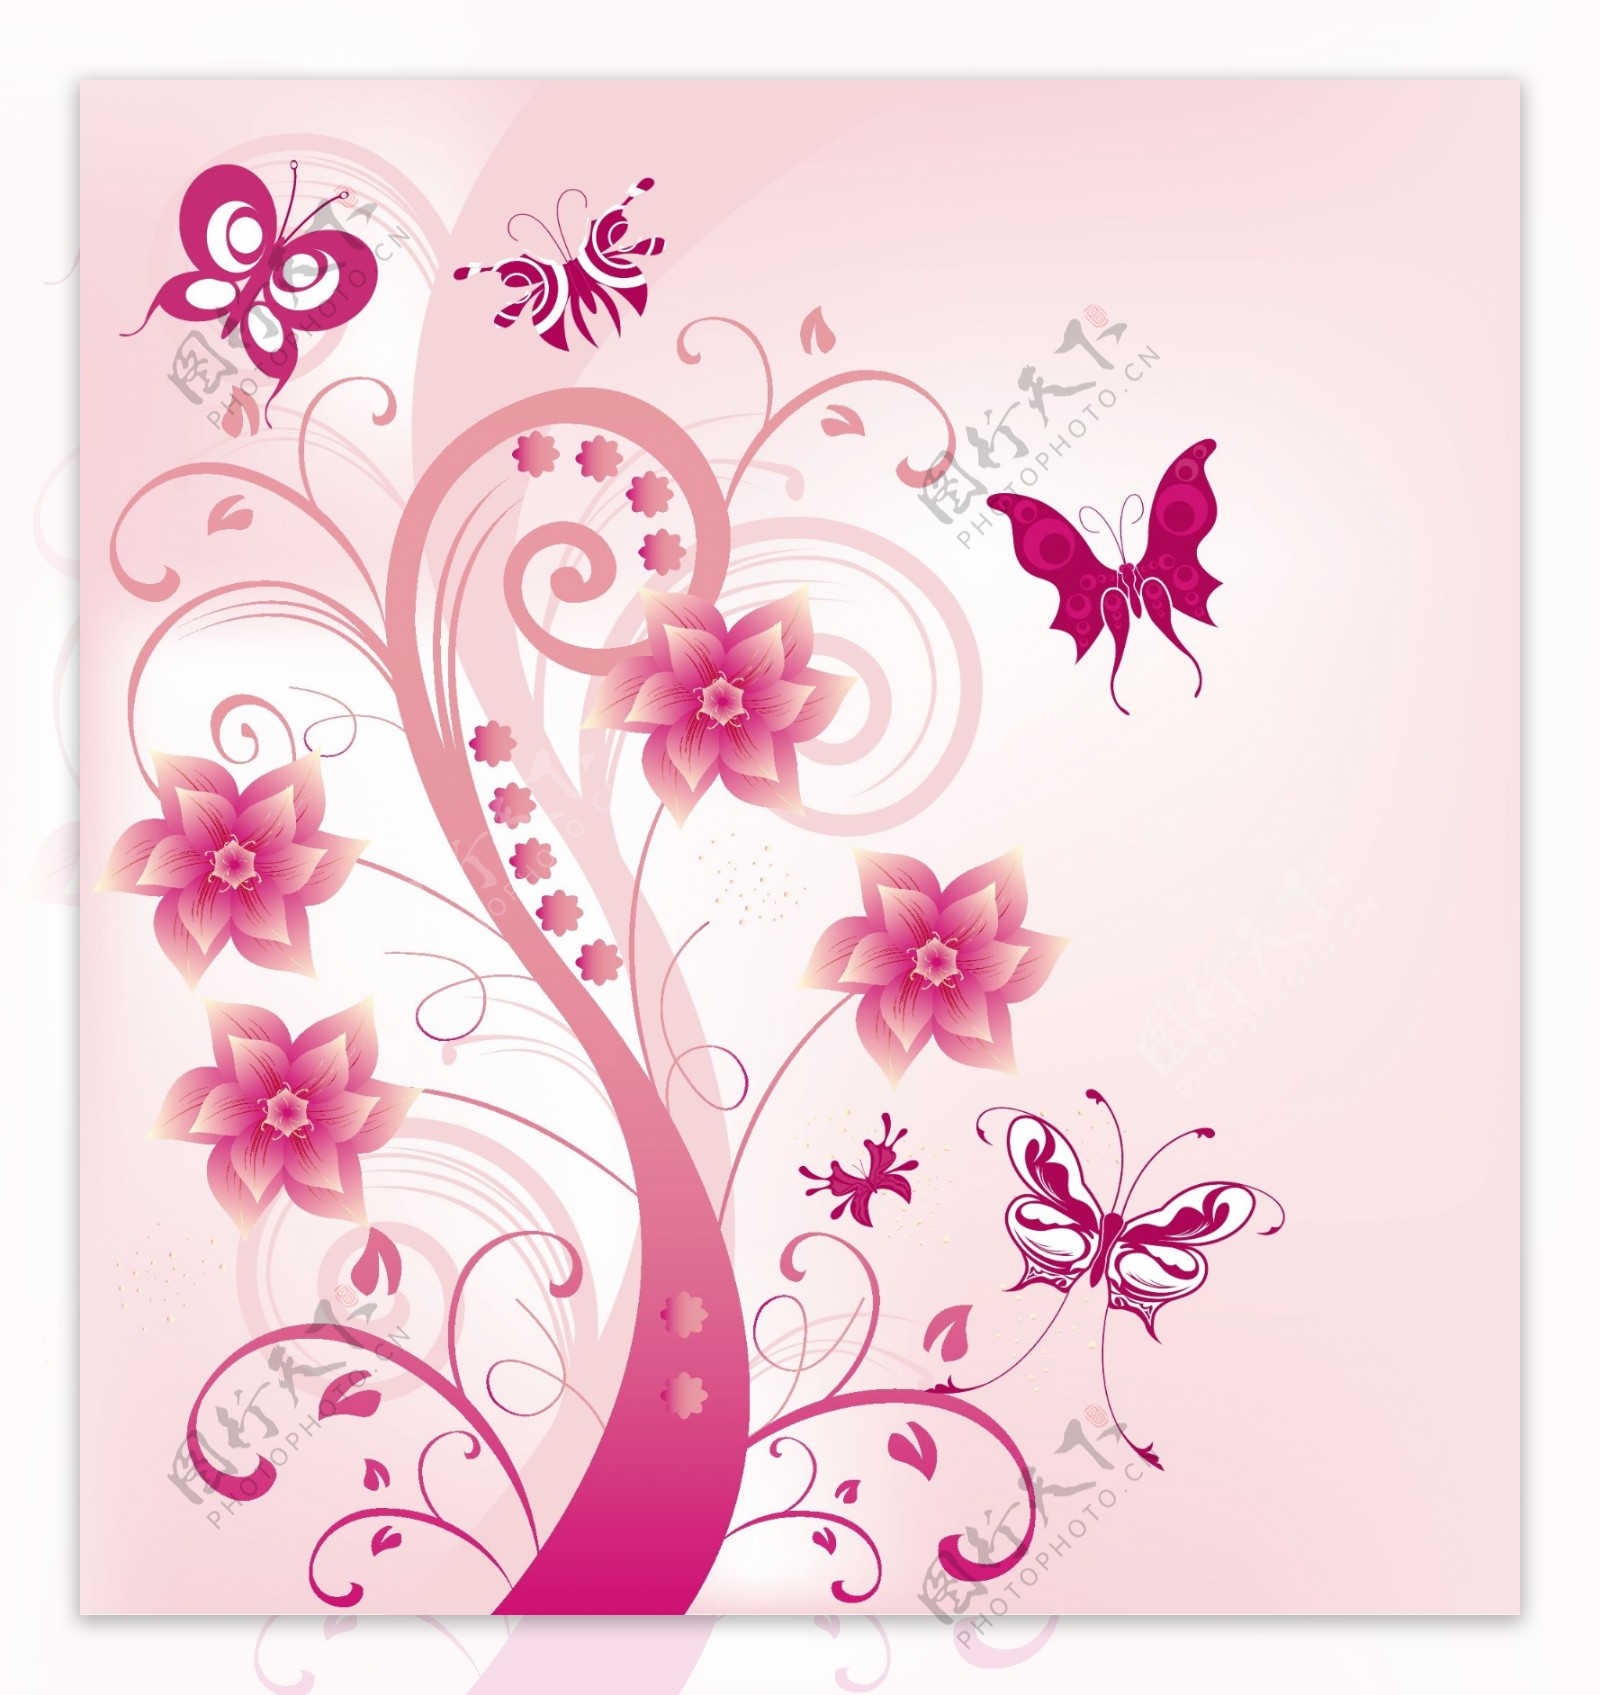 粉红色花的涡流与蝶类矢量插画